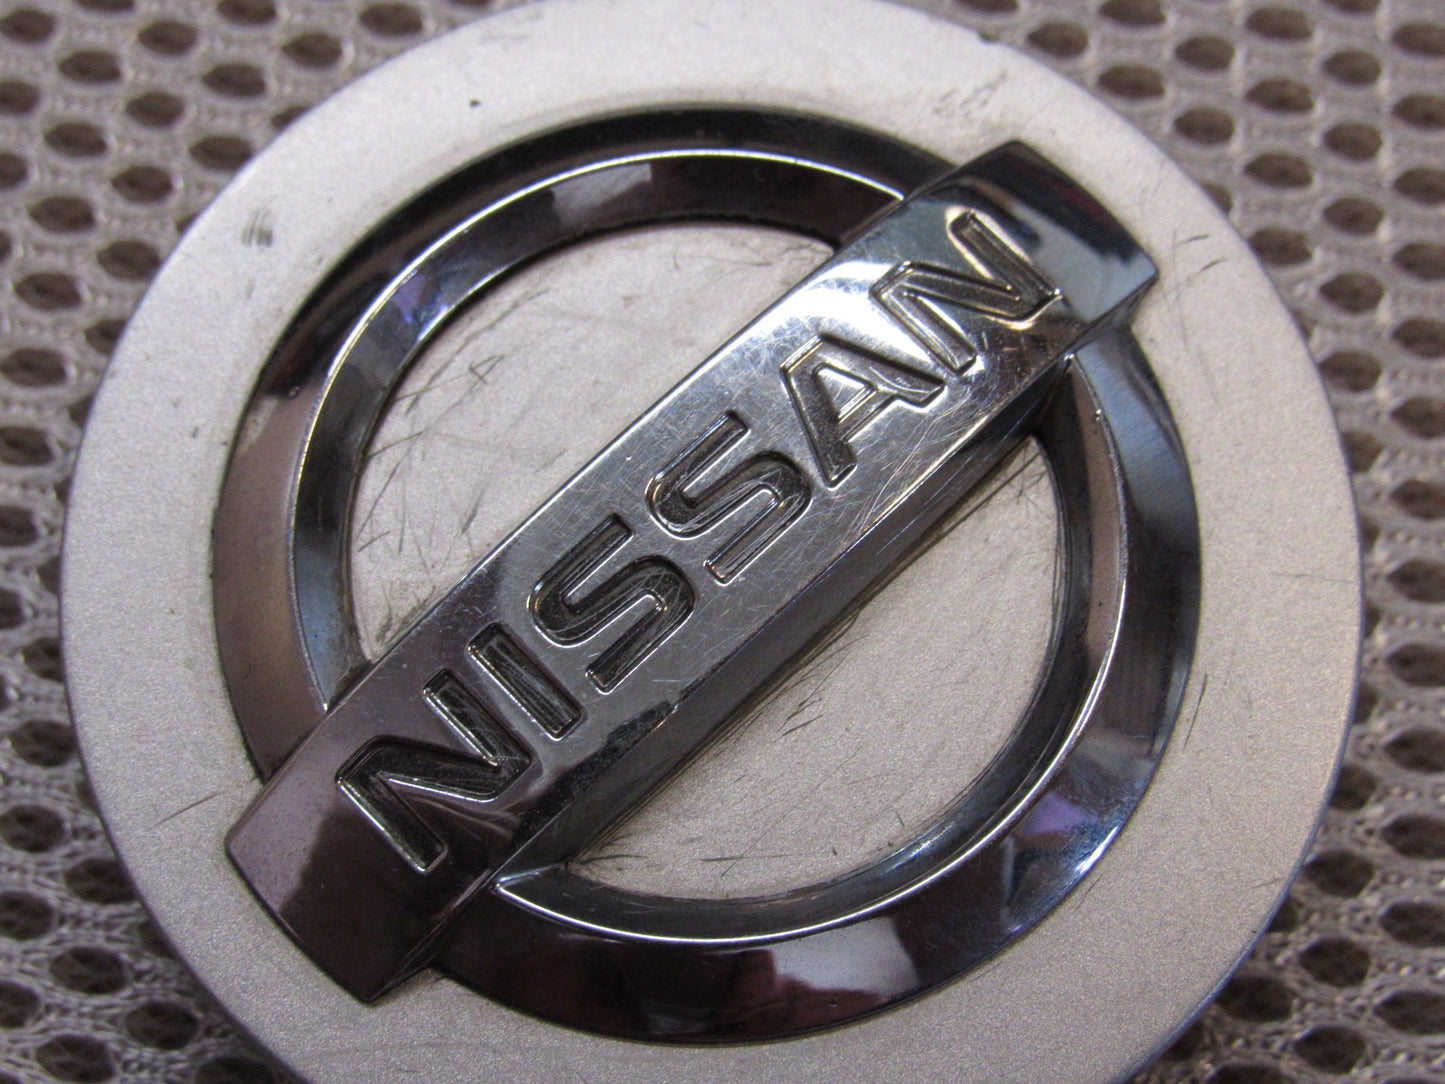 02 03 04 05 06 Nissan Altima OEM Wheel Center Cap